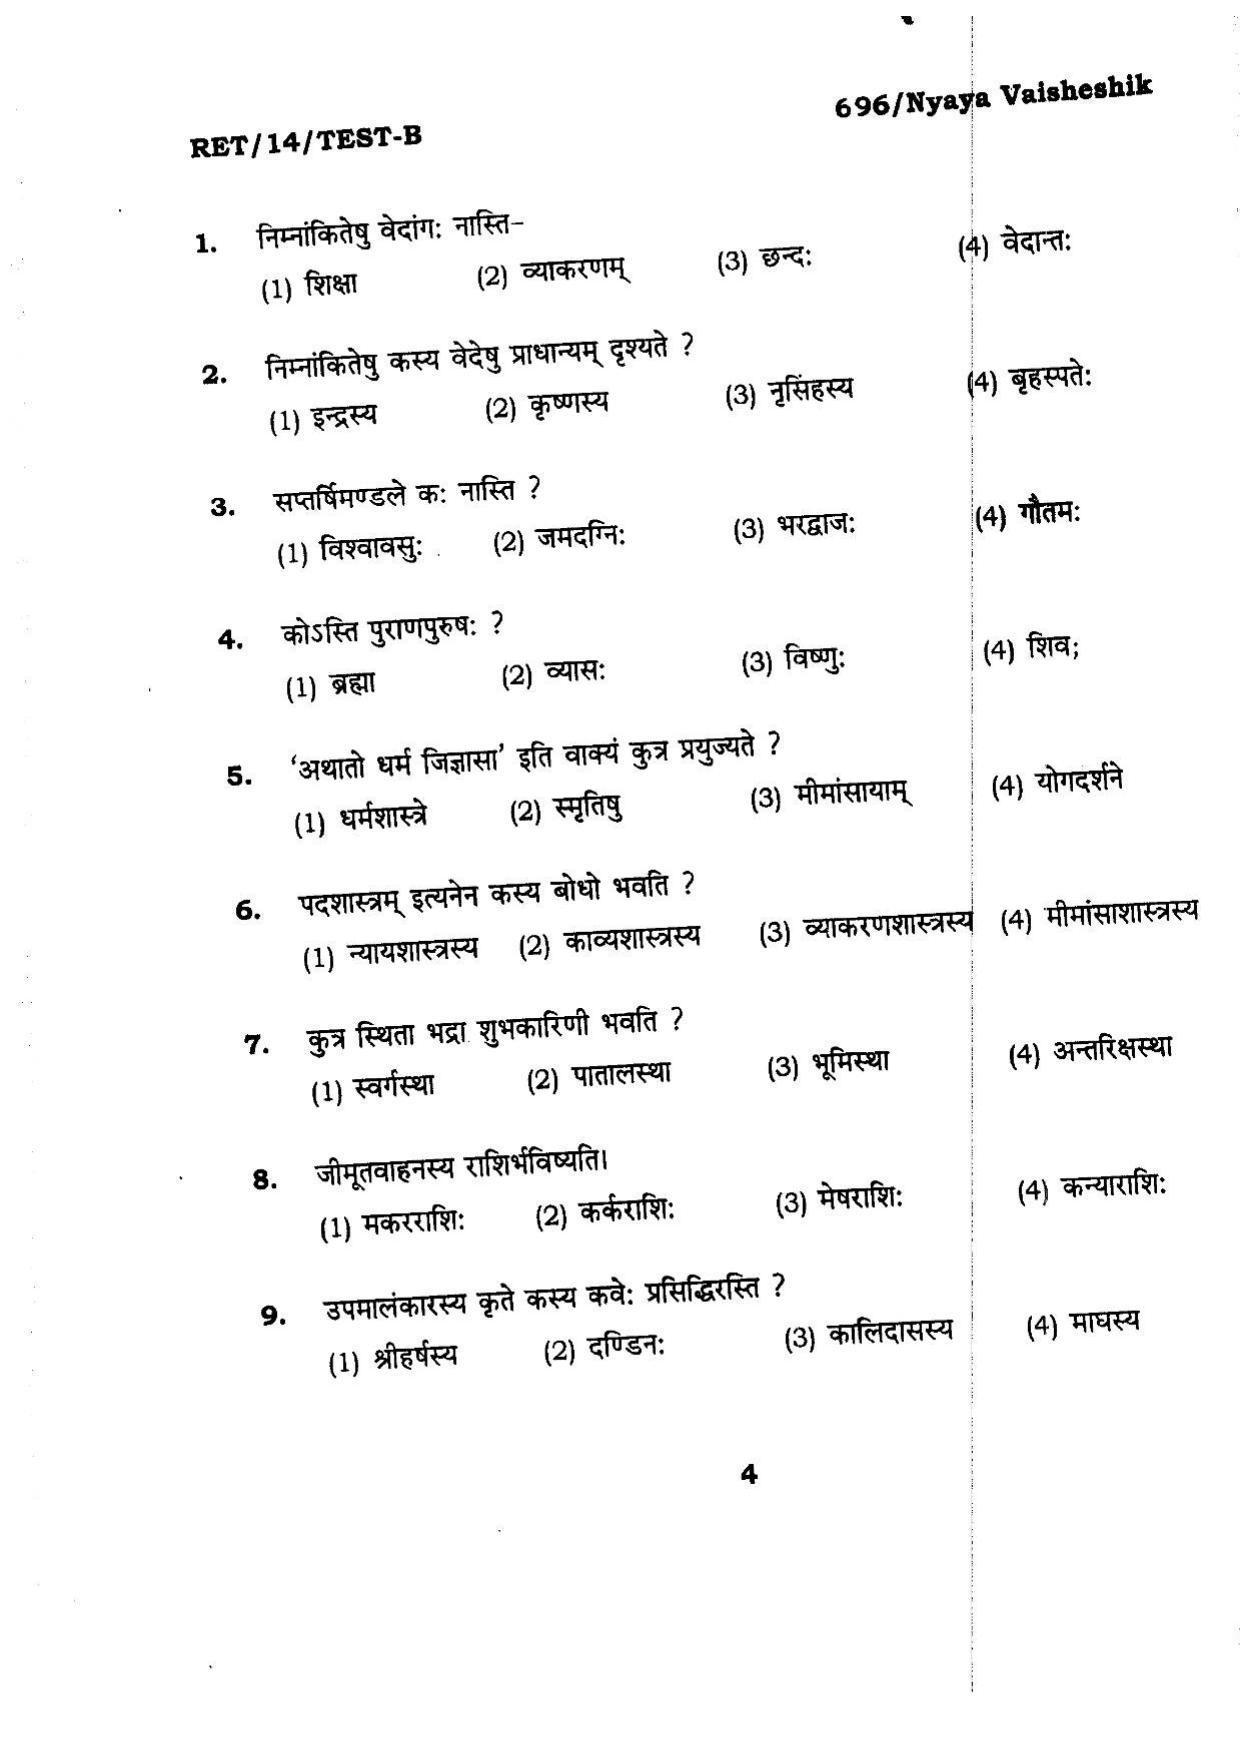 BHU RET Nyaya Vaisheshik 2014 Question Paper - Page 4